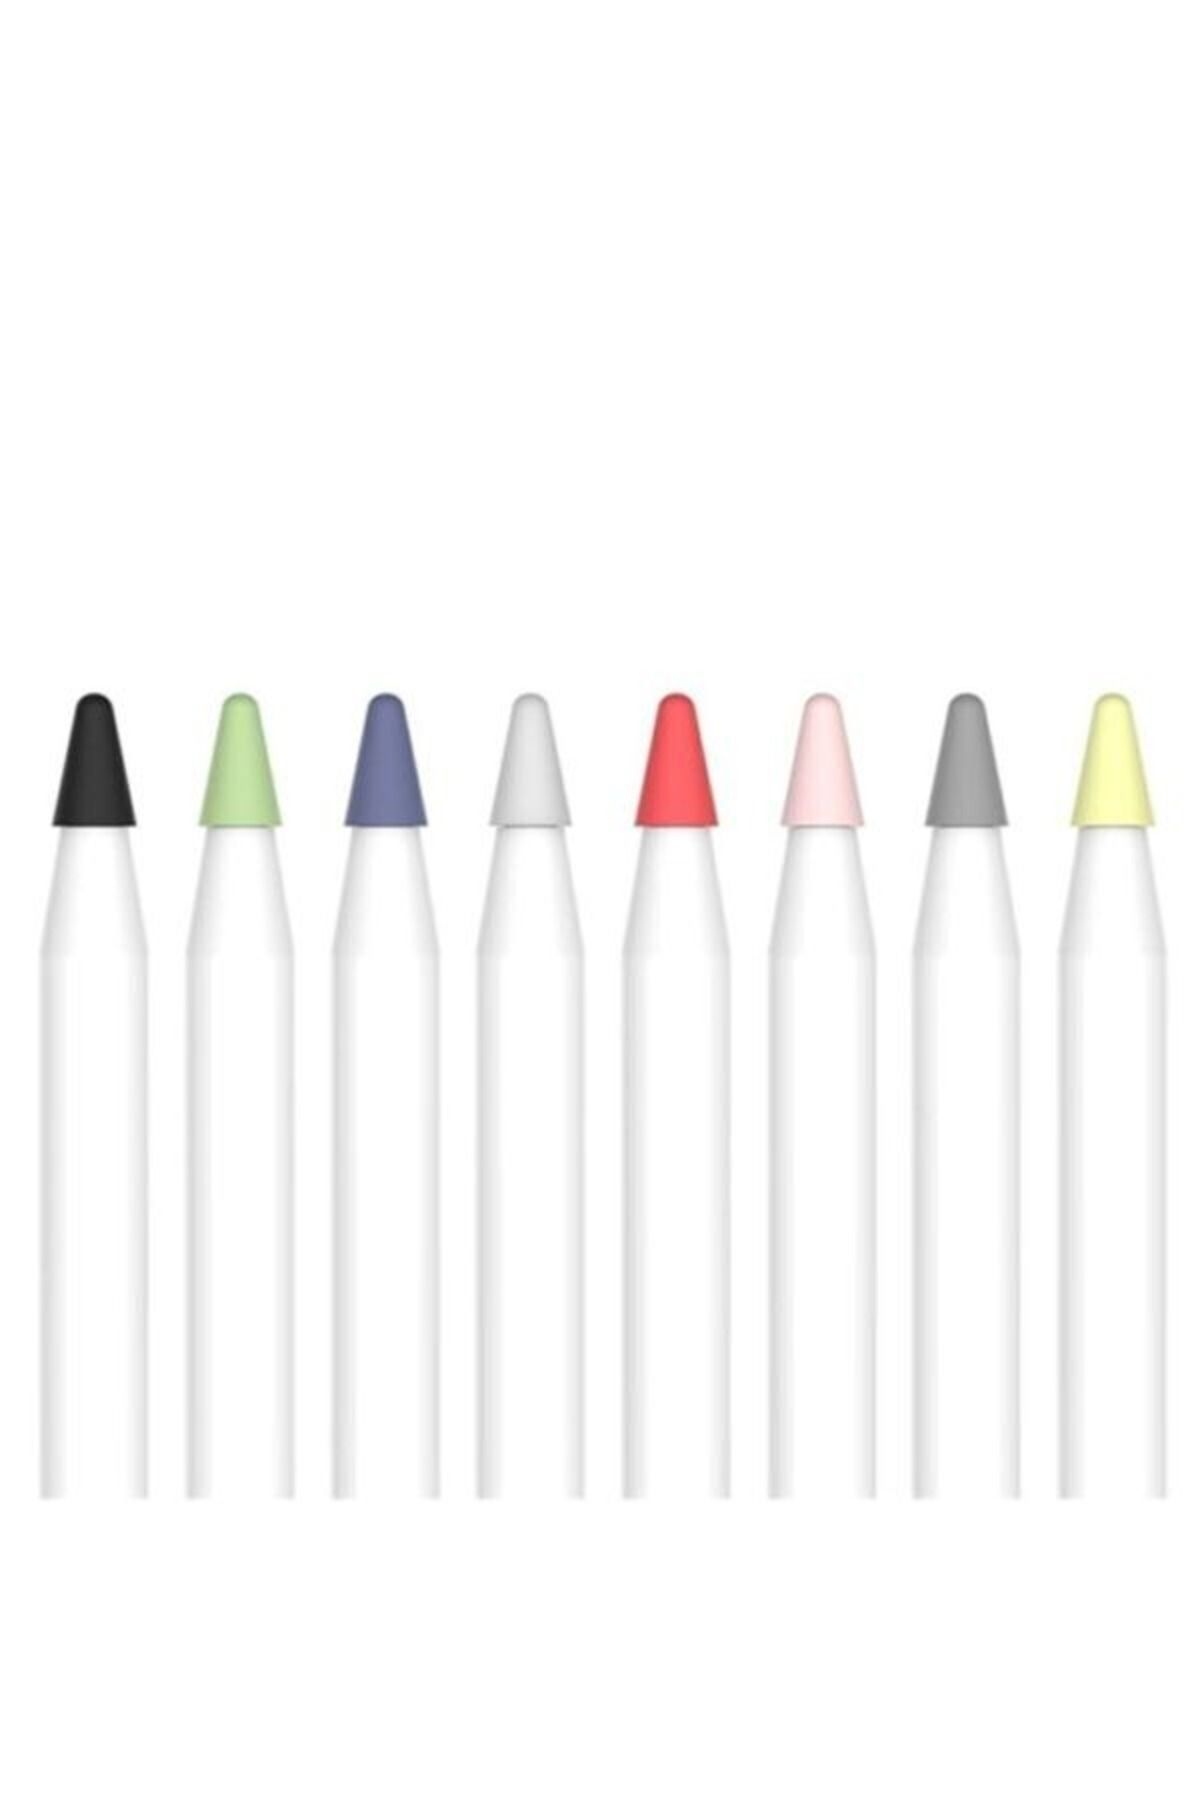 NANOSPACE Apple Pencil 1. Ve 2. Nesil İle Uyumlu Kalem Ucu Koruyucu Silikon Kapak 10'lü Renk